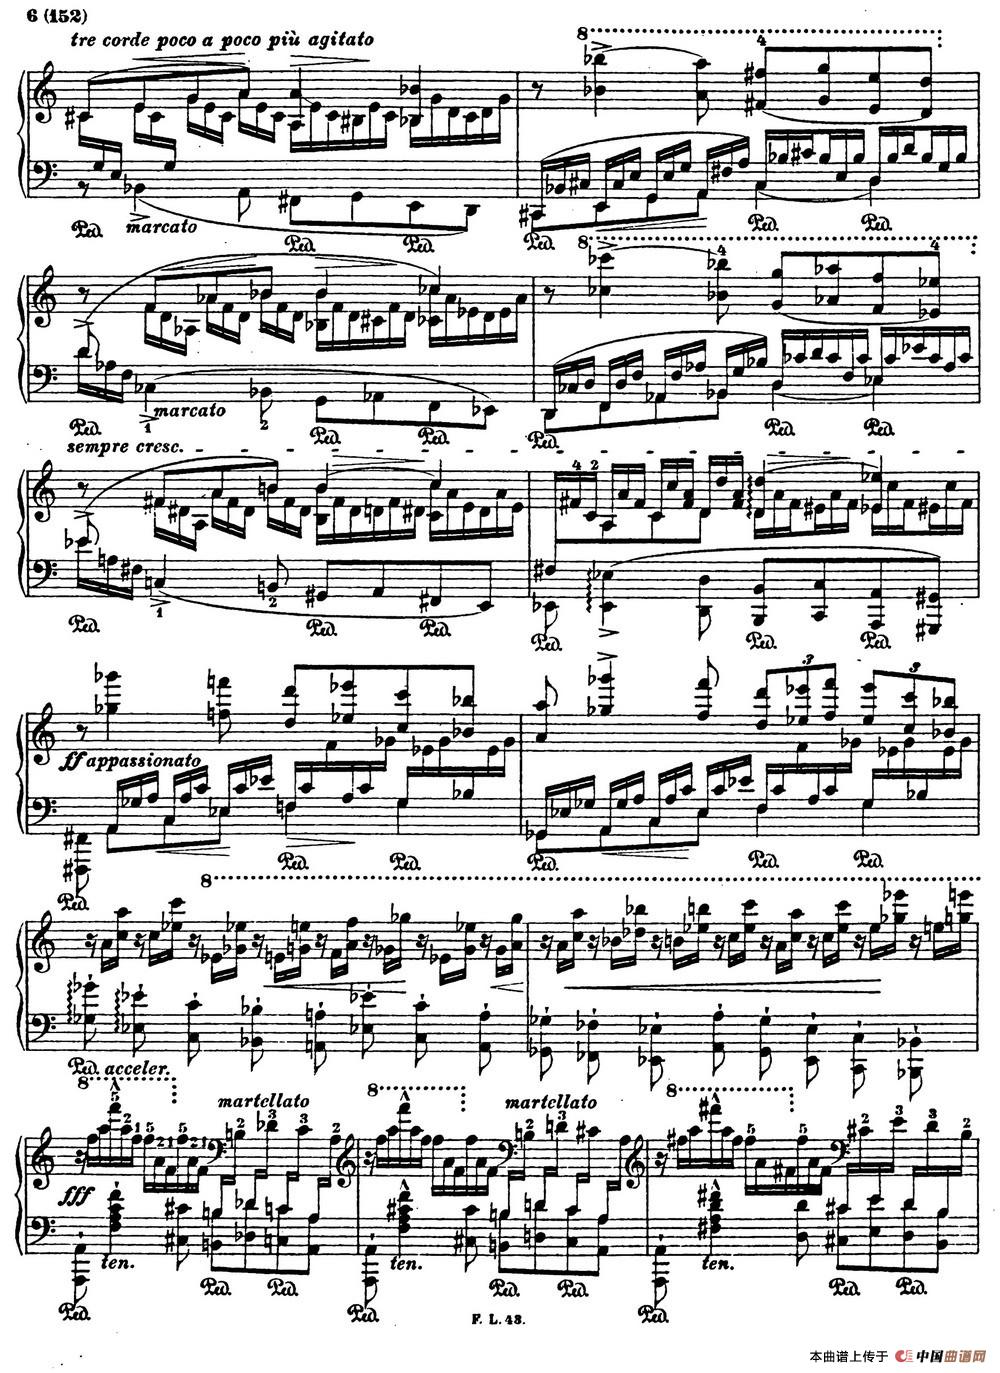 李斯特音乐会练习曲 S145（2 S145 侏儒舞 Gnomenreigen）(1)_Etudes de Concert s145 Liszt_页面_13~1.jpg